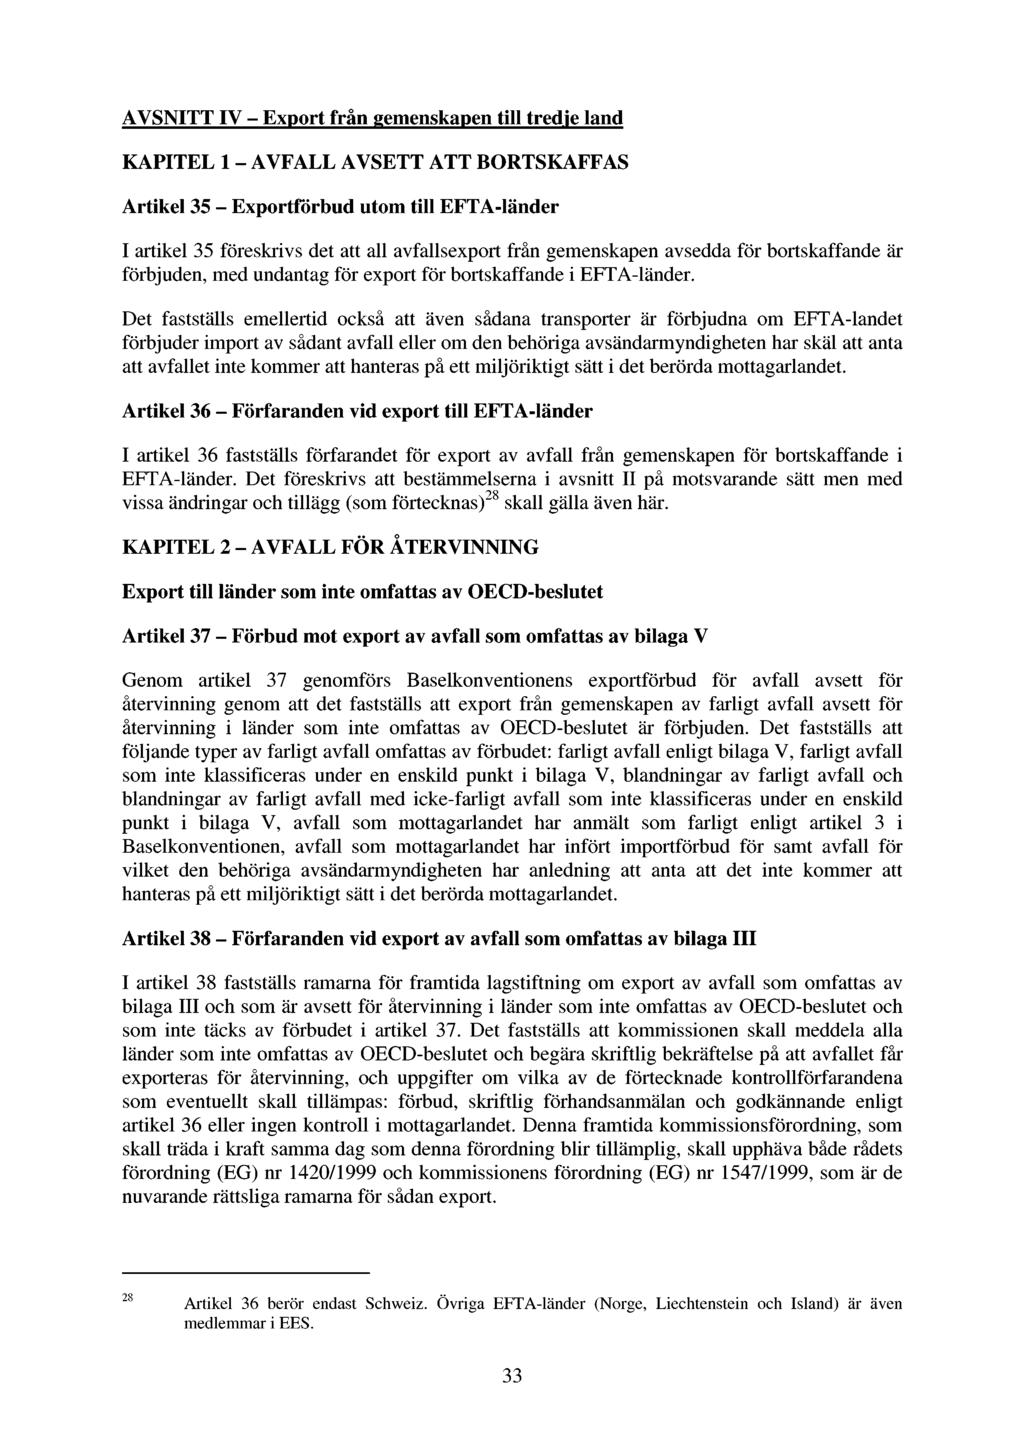 AVSNITT IV - Export från gemenskapen till tredje land KAPITEL l - AVFALL AVSETT ATT BORTSKAFFAS Artikel 35 - Exportförbud utom till EFTA-länder I artikel 35 föreskrivs det att all avfallsexport från